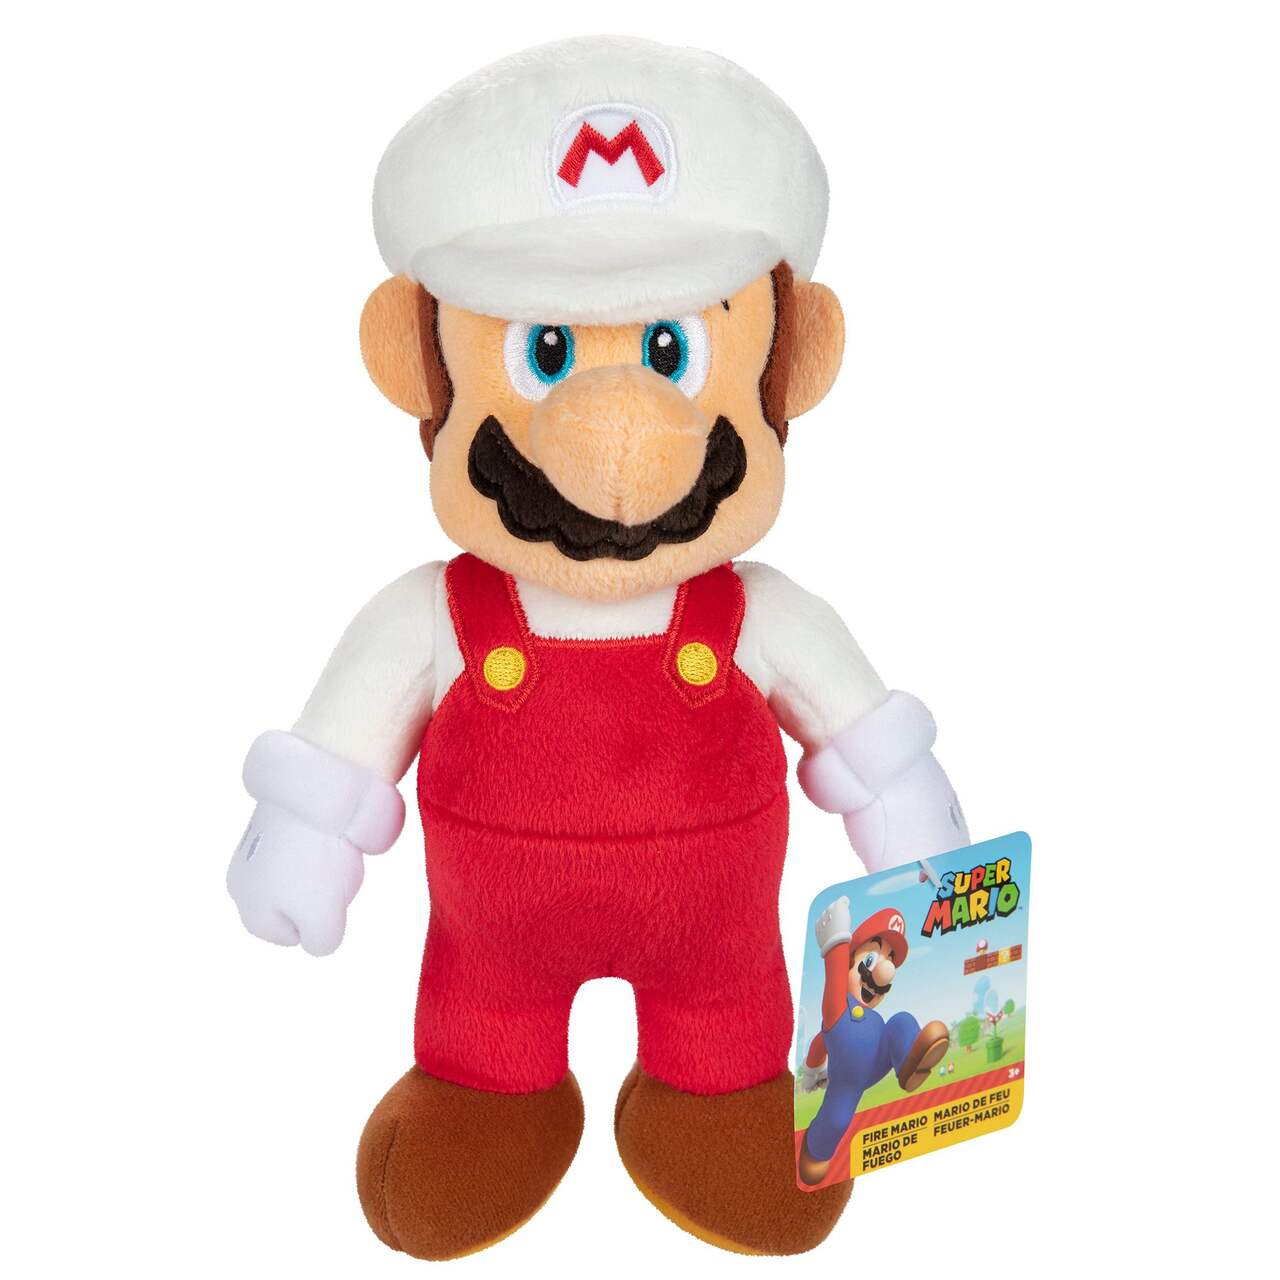 Nintendo Super Mario Plush, 9-in, Ages 3+